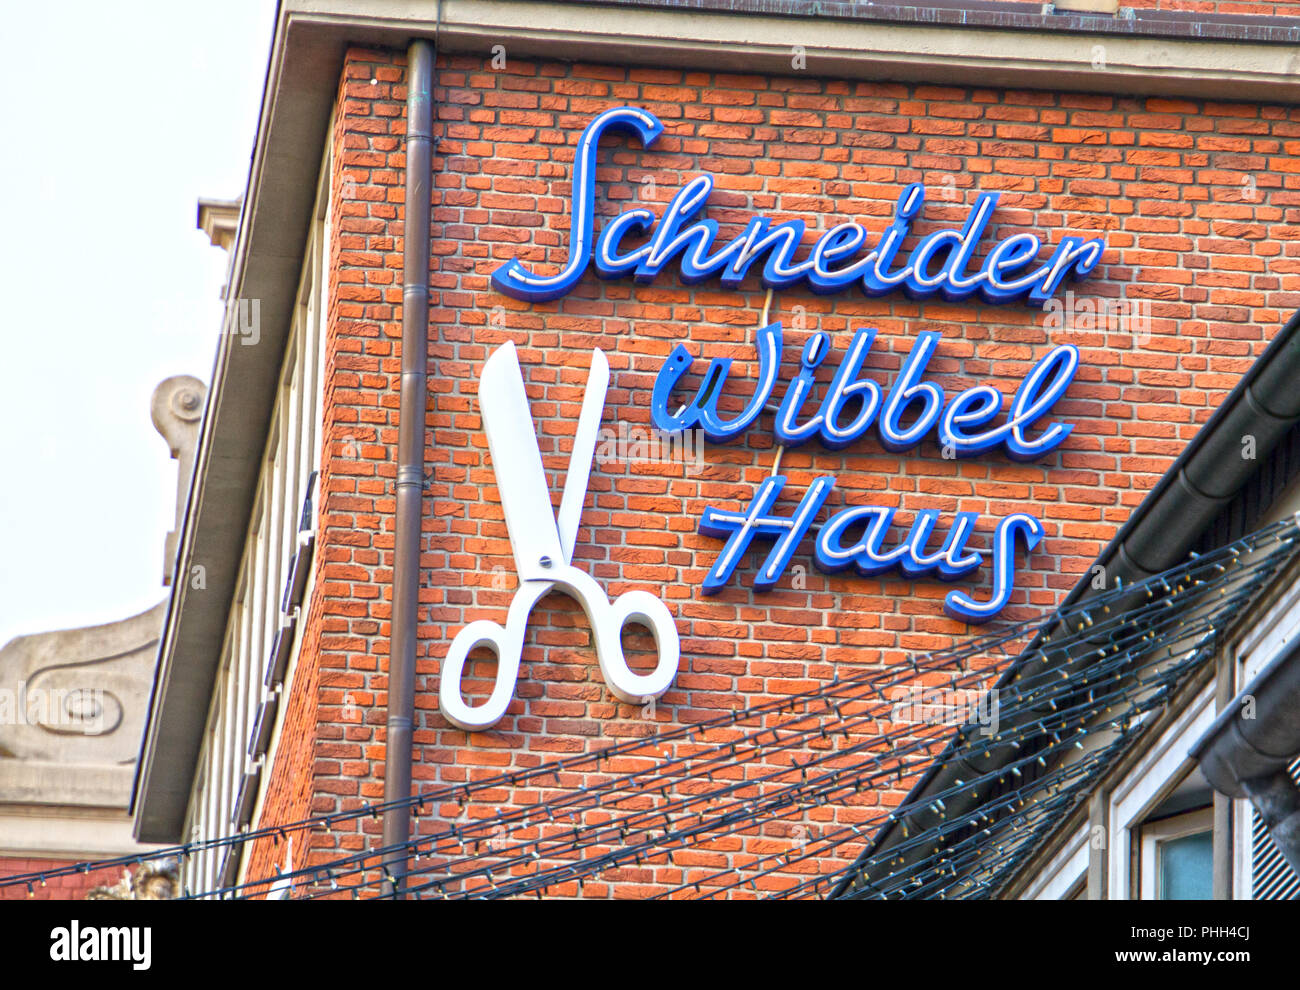 Schneider-Wibbel-Gasse, Dusseldorf, NRW, Germany Stock Photo